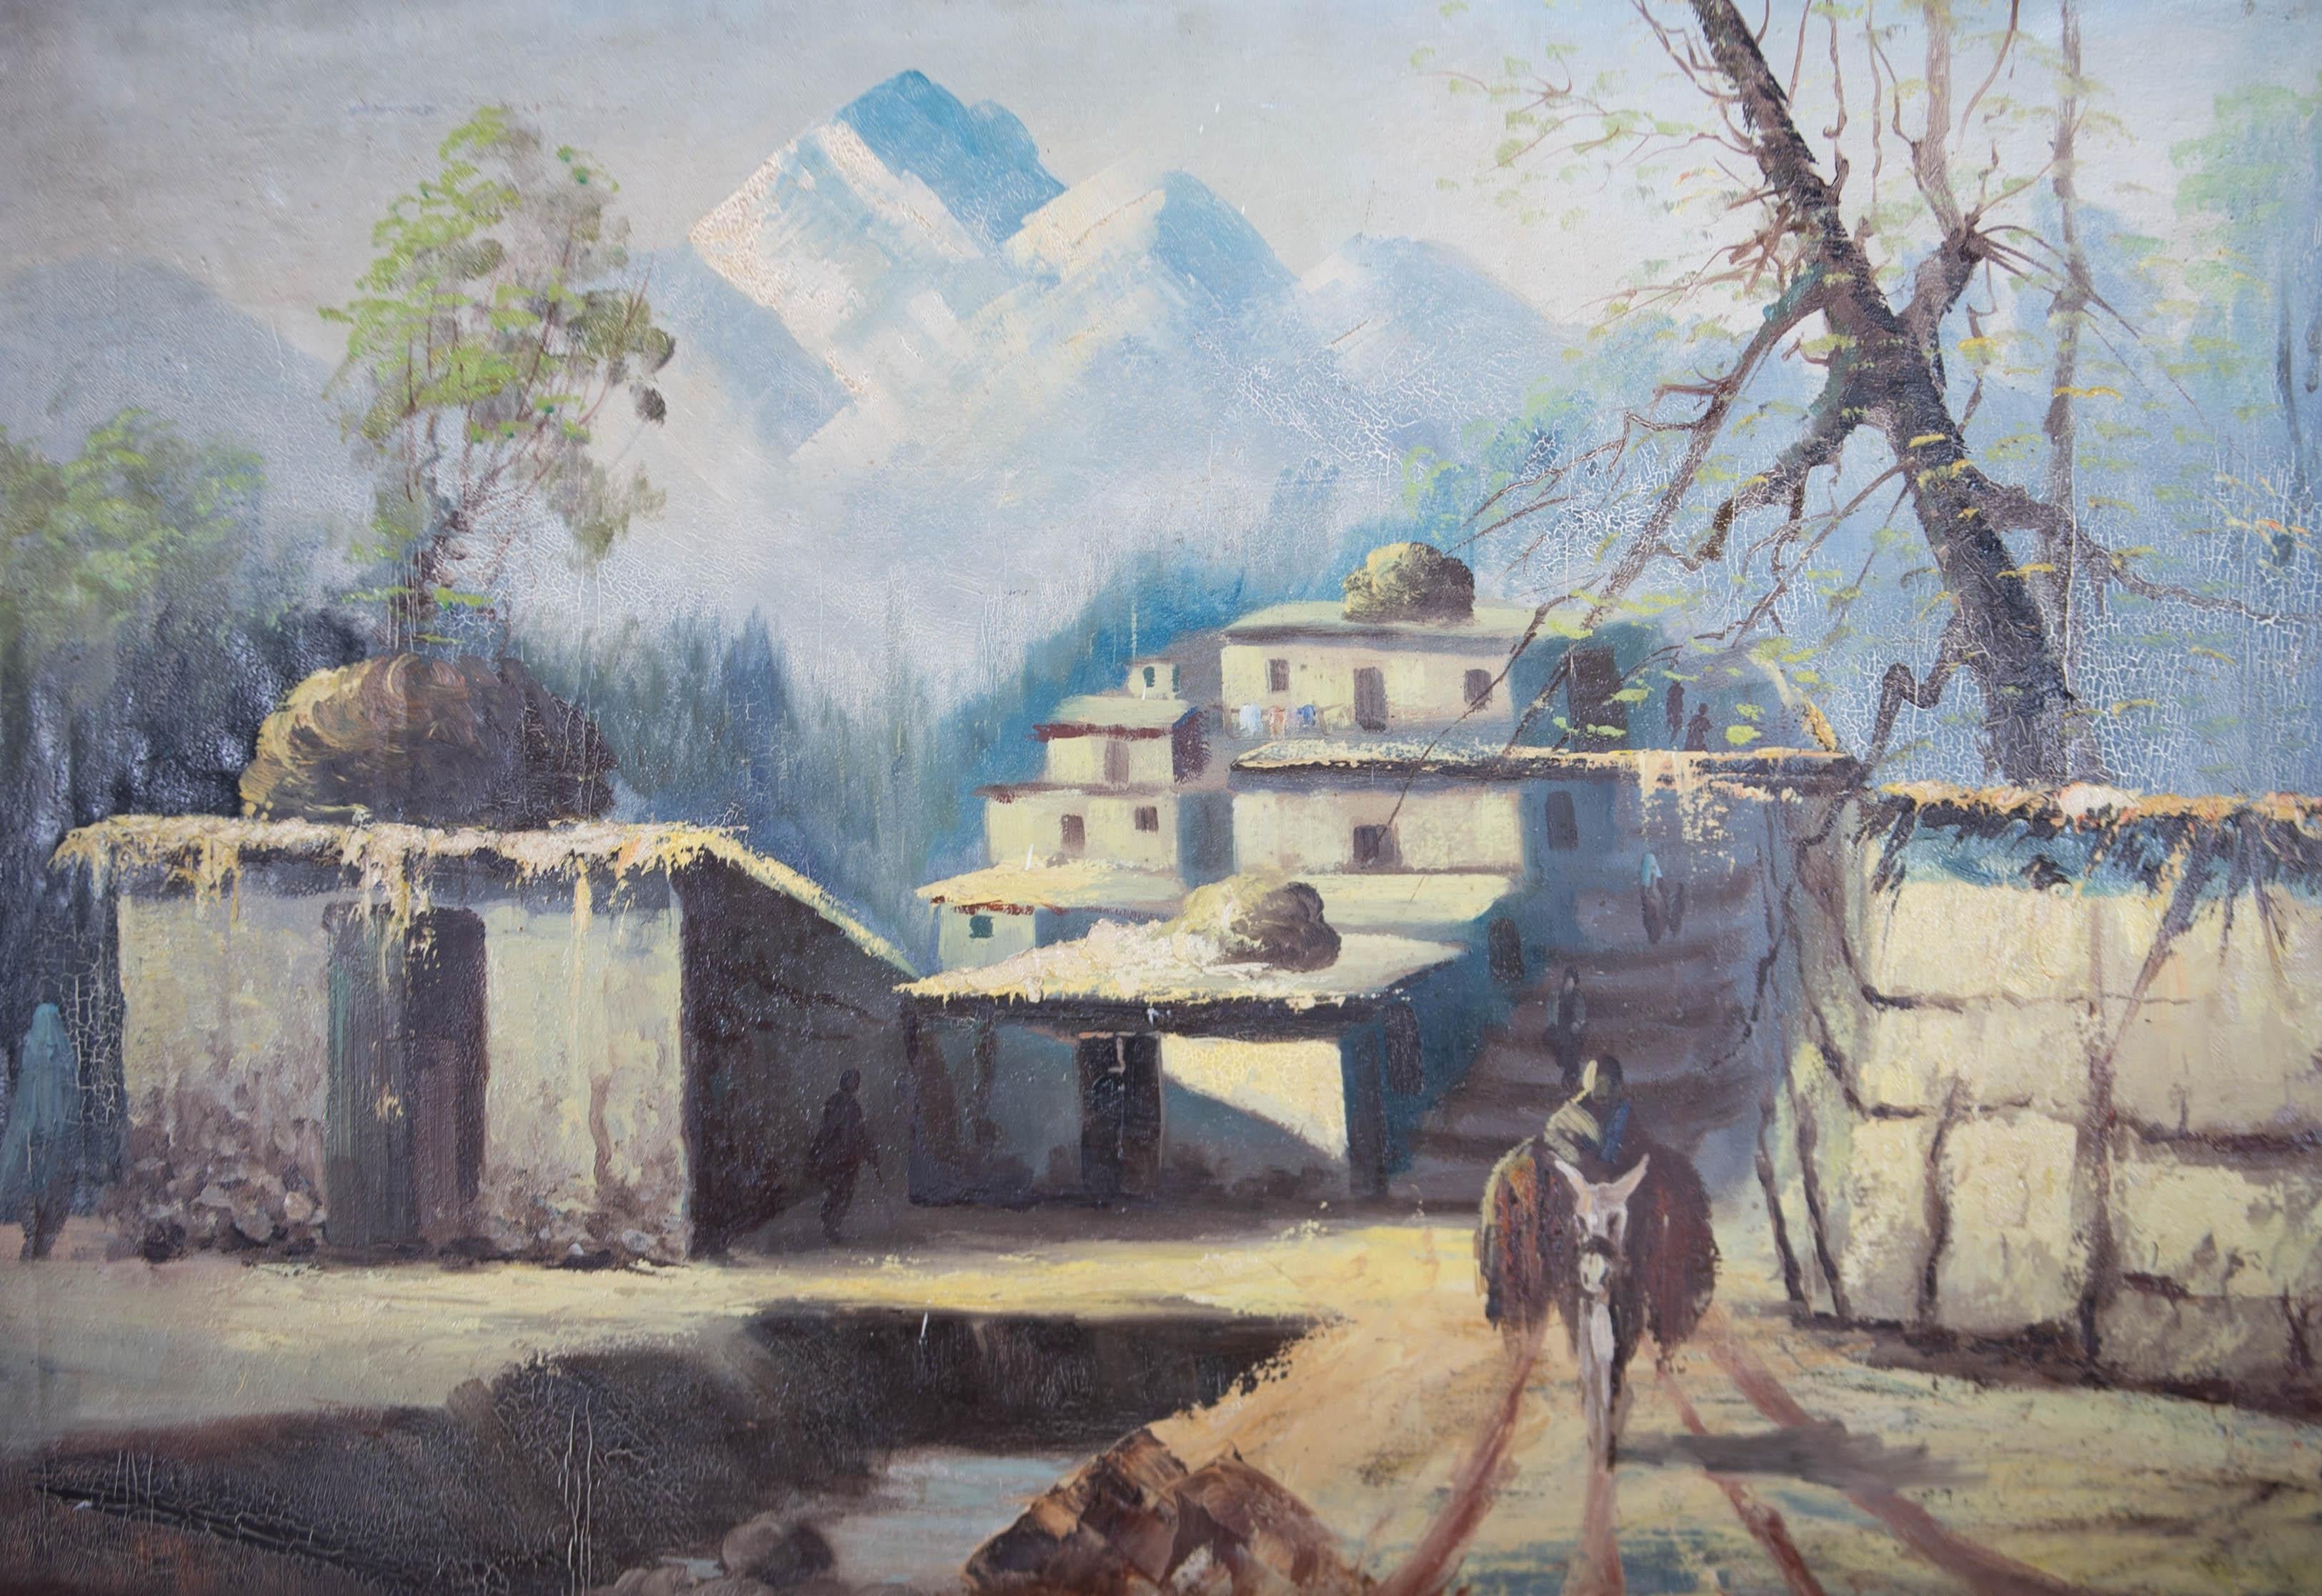 depicting village scene